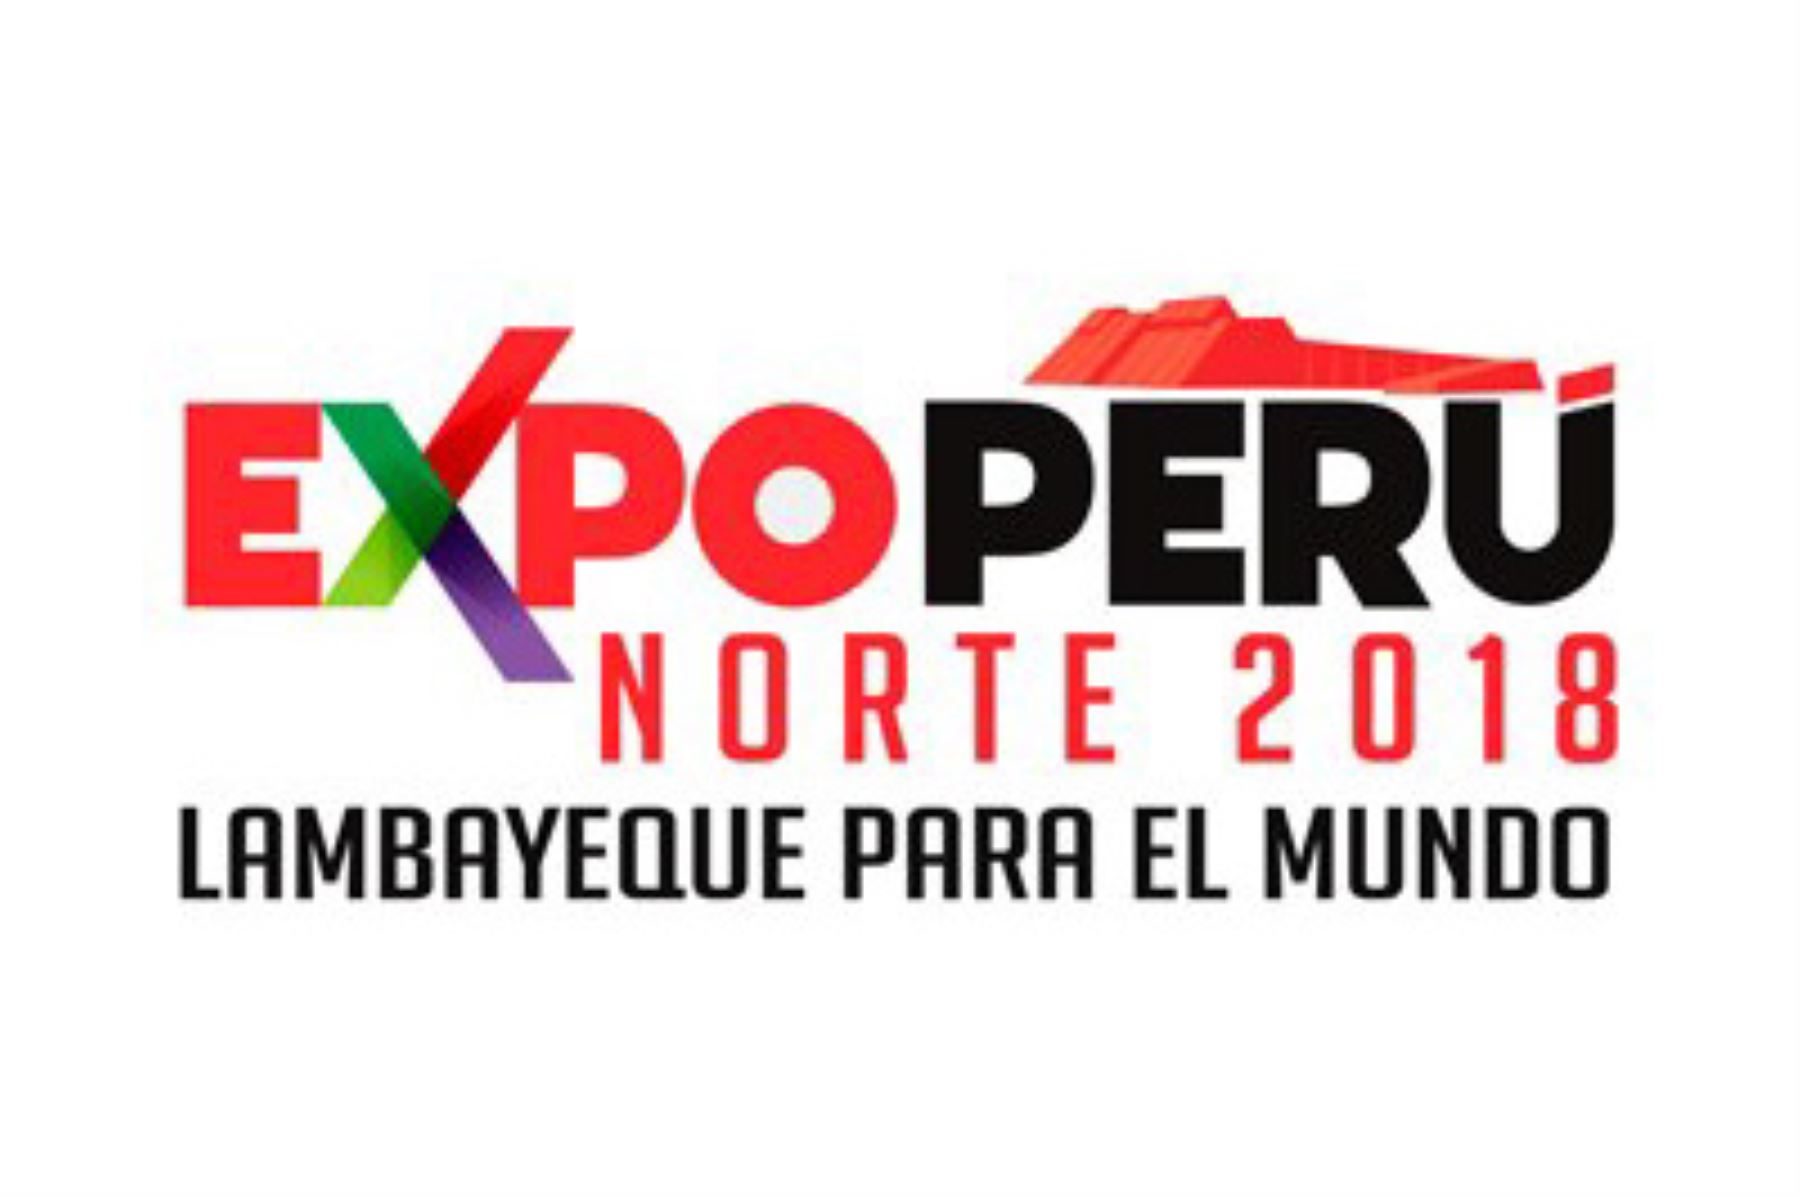 Todo quedó listo para la “ExpoPerú Norte 2018: Lambayeque para el Mundo", plataforma de promoción de proyectos, negocios nacionales e internacionales, así como actividades artísticas y culturales, que se iniciará mañana en Chiclayo, región Lambayeque. ANDINA/Difusión